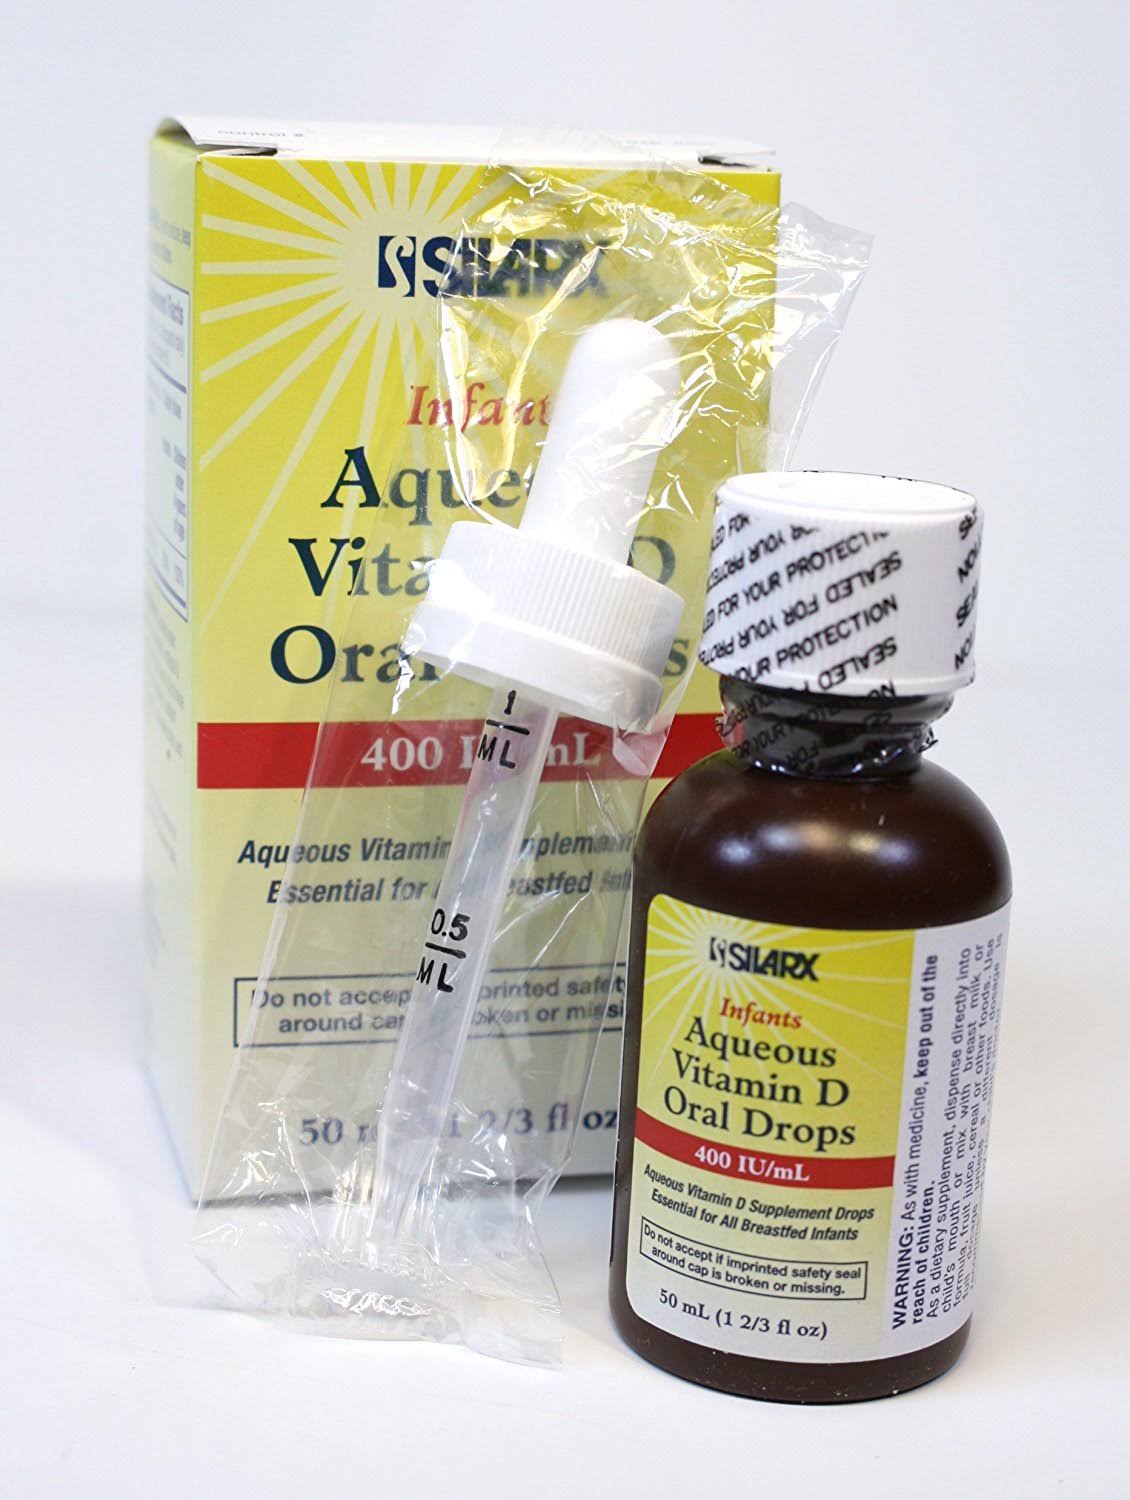 Silarx Infants Aqueous Vitamin D Oral Drops, 50 ml